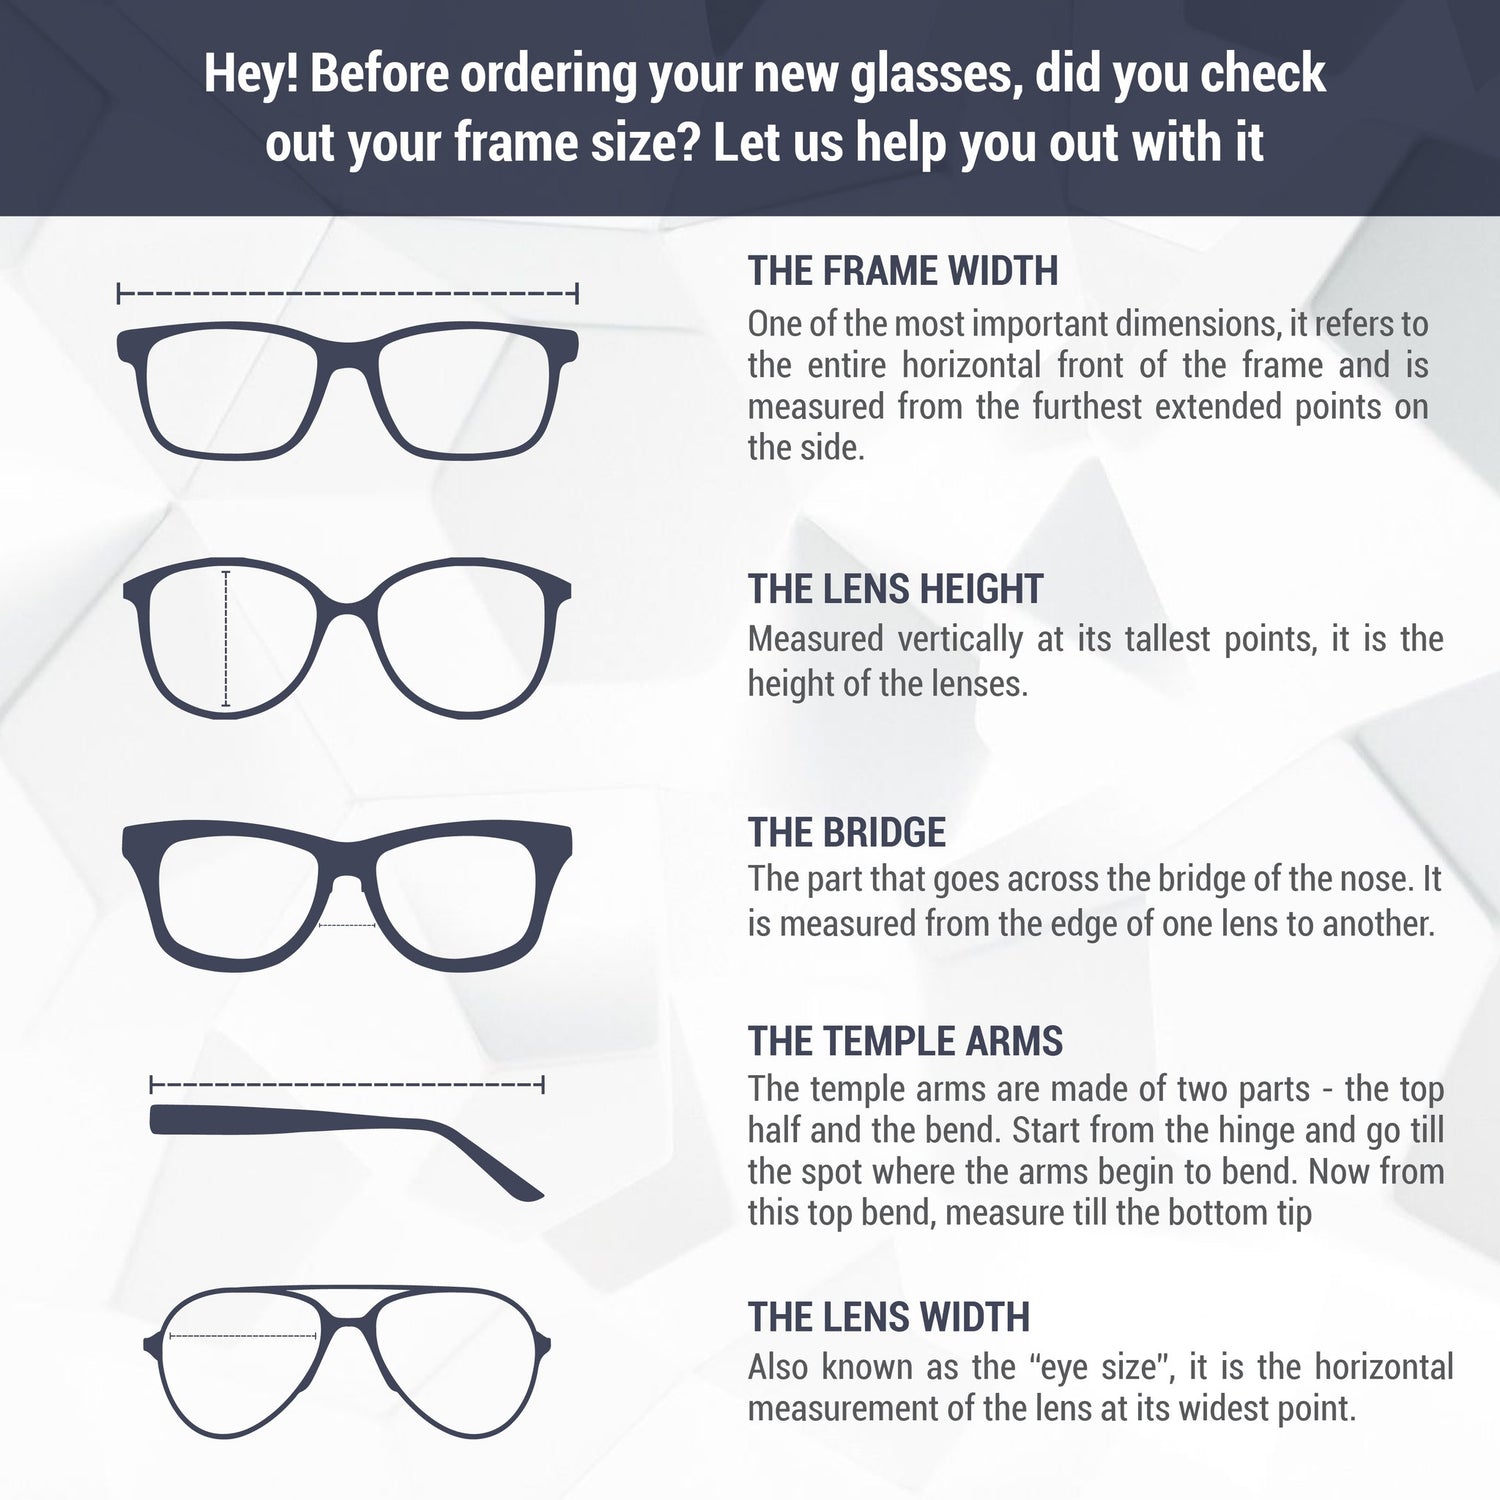 Monture de lunettes Avanglion | Modèle AV11945